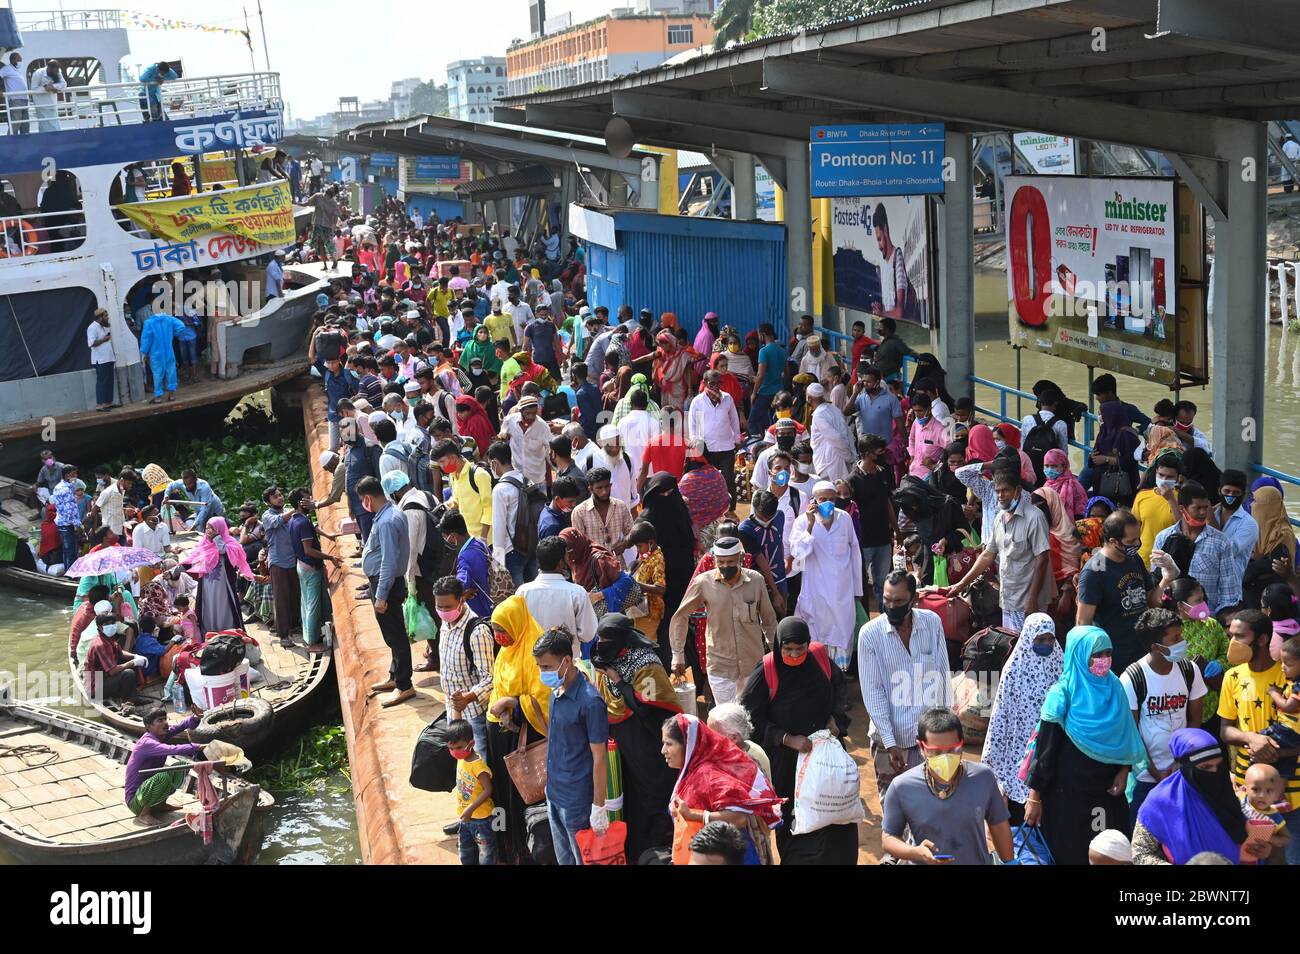 Les migrants ont envahi le terminal de ferry de Sadarghat alors qu'ils quittent la capitale après la fin d'un confinement à la suite de l'épidémie de coronavirus COVID-19 à Dhaka, au Bangladesh, le 1er juin 2020. Banque D'Images